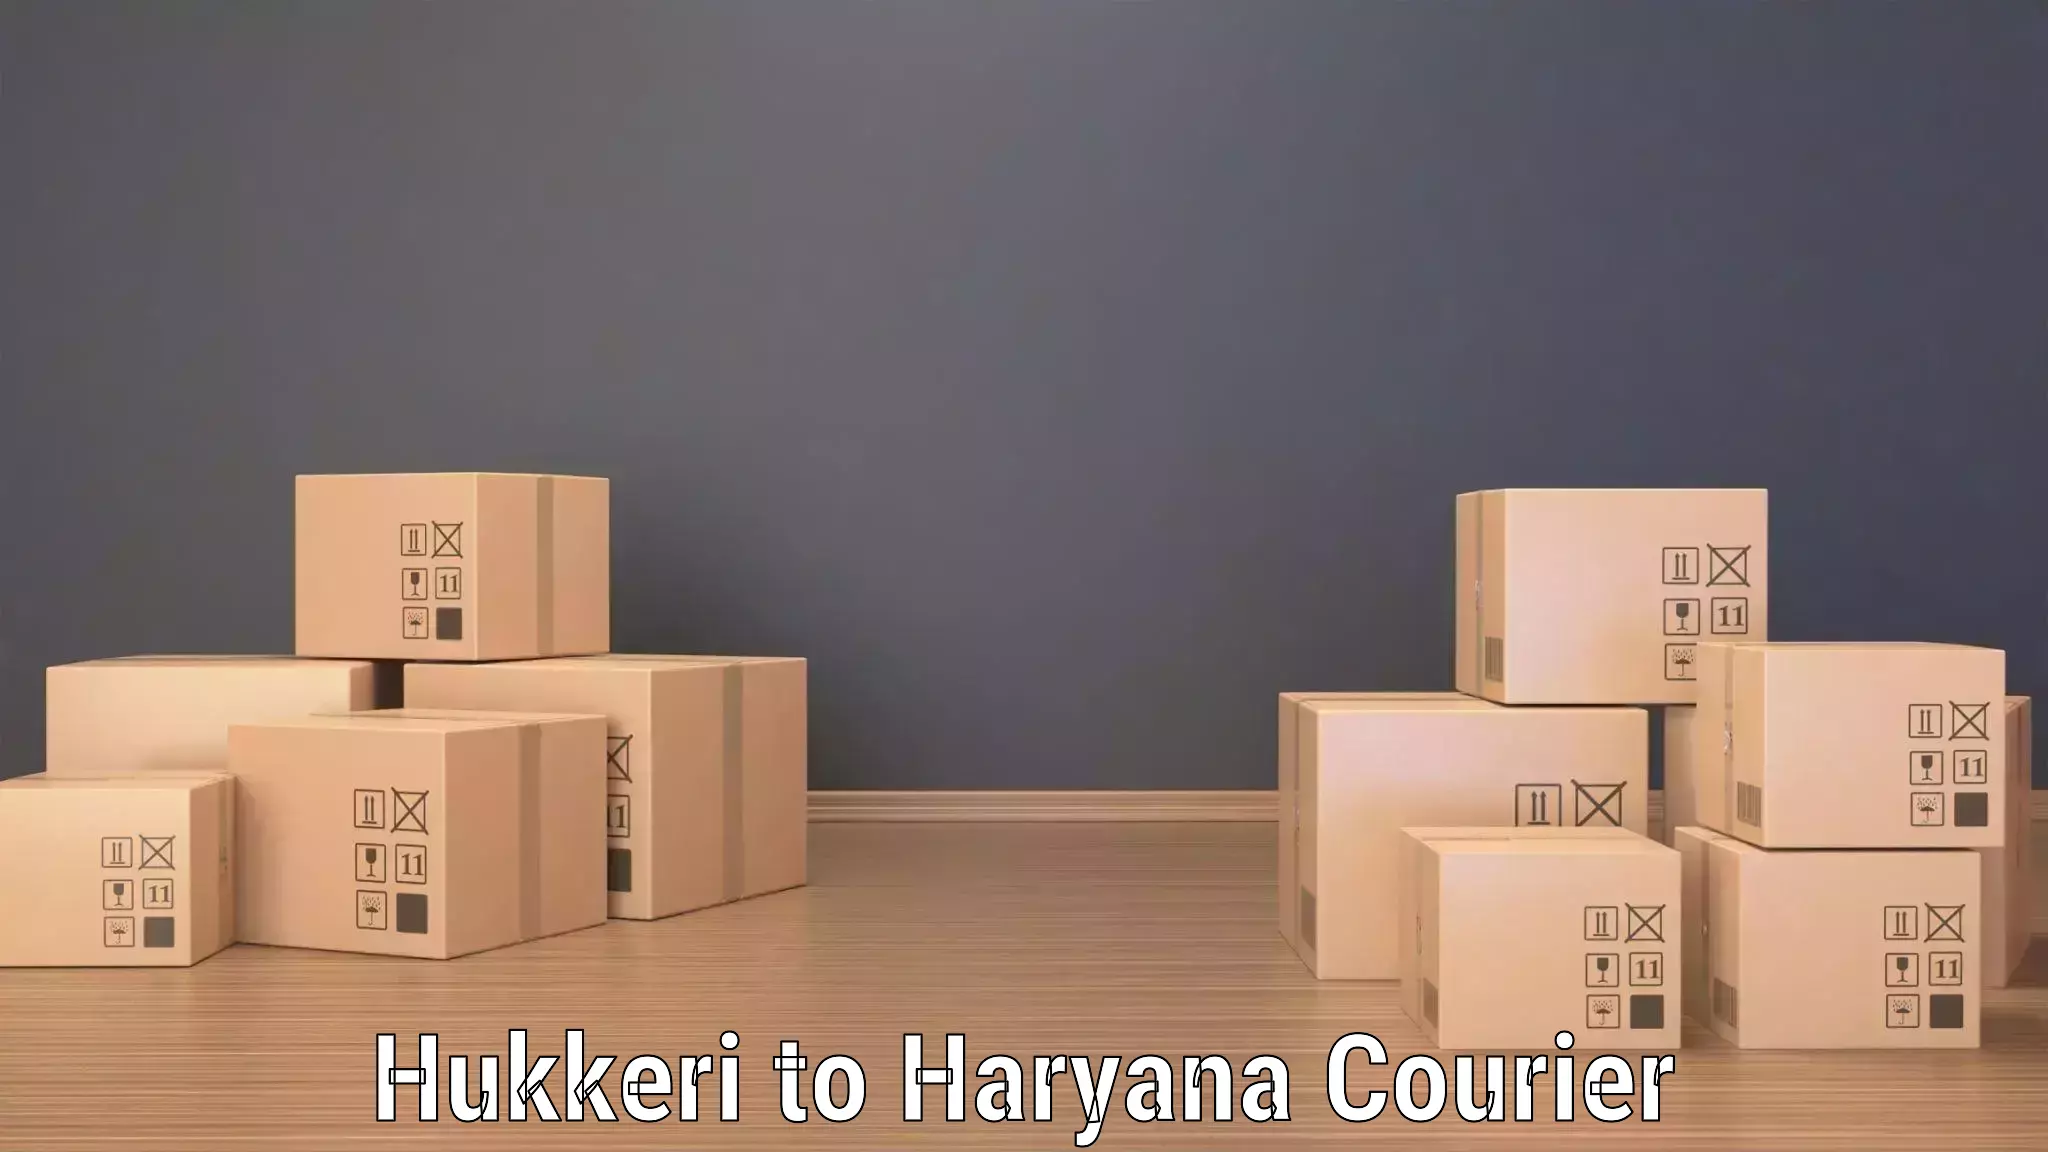 On-call courier service Hukkeri to Kurukshetra University